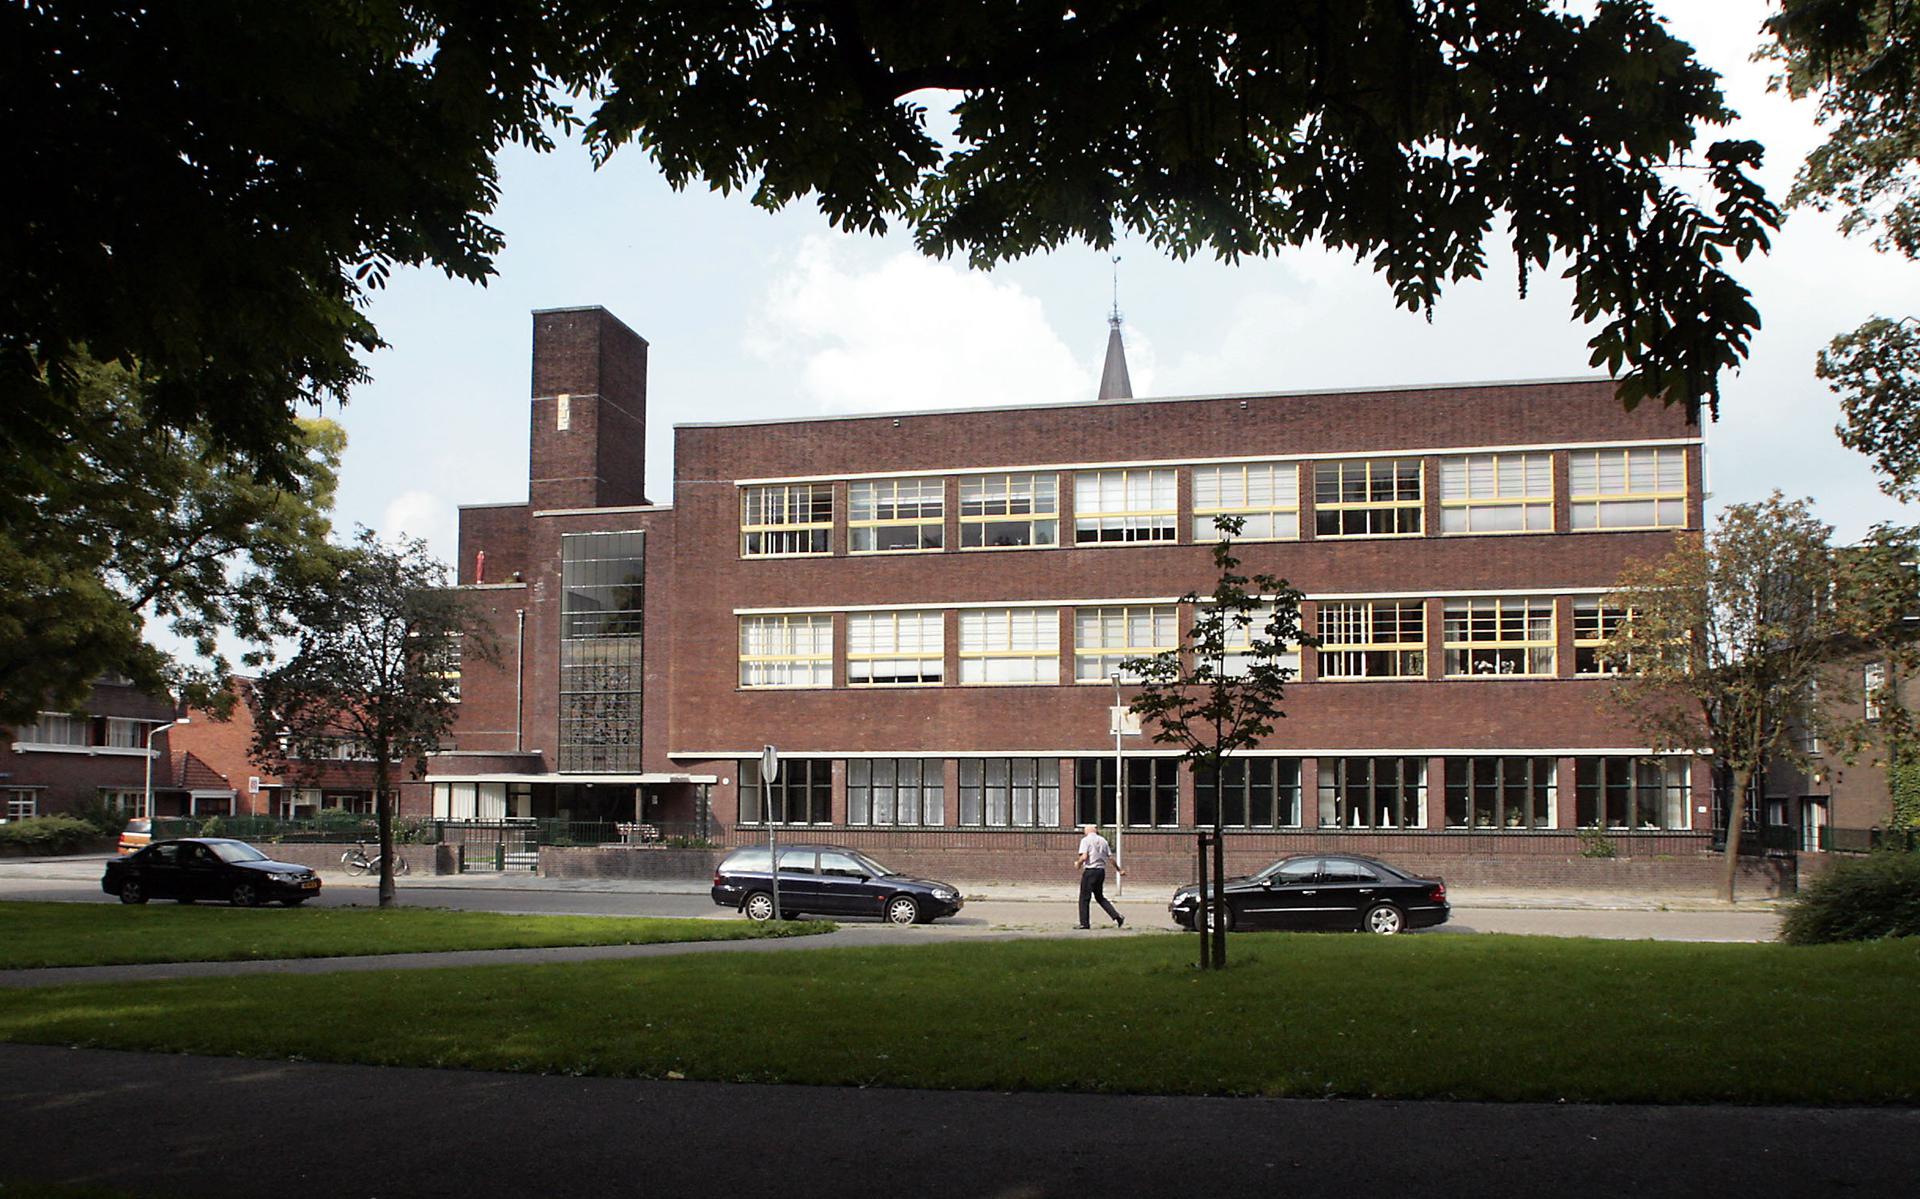 Oude schoolgebouwen krijgen soms een tweede leven, vaak na een grondige renovatie. De voormalige middelbare- en hogere technische school in Leeuwarden werd omgebouwd tot appartementencomplex Wilhelminastate. 